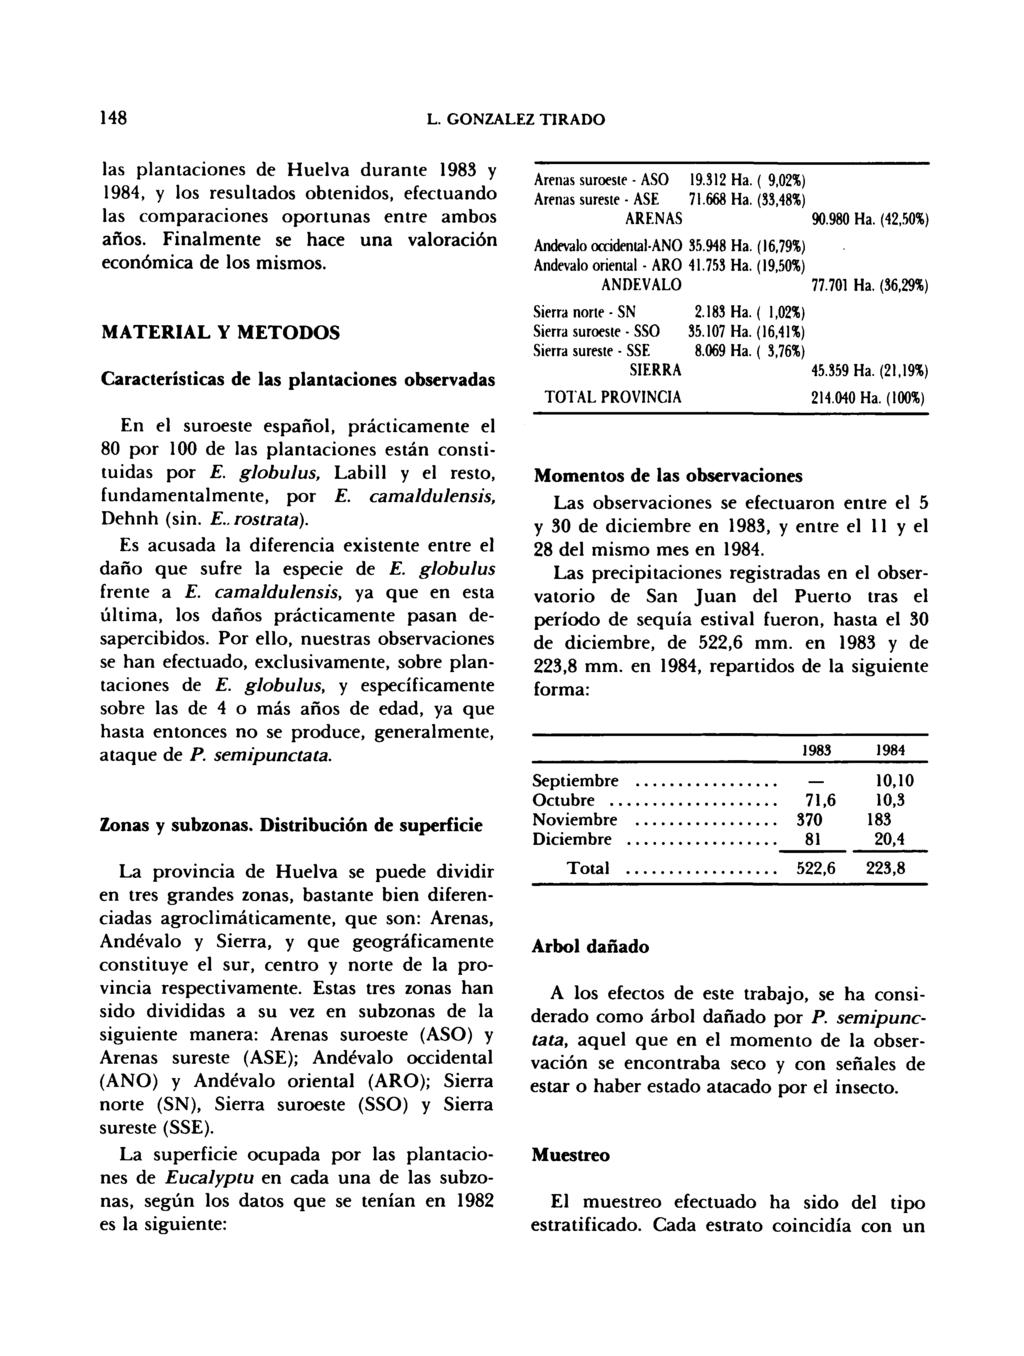 las plantaciones de Huelva durante 1983 y 1984, y los resultados obtenidos, efectuando las comparaciones oportunas entre ambos años. Finalmente se hace una valoración económica de los mismos.